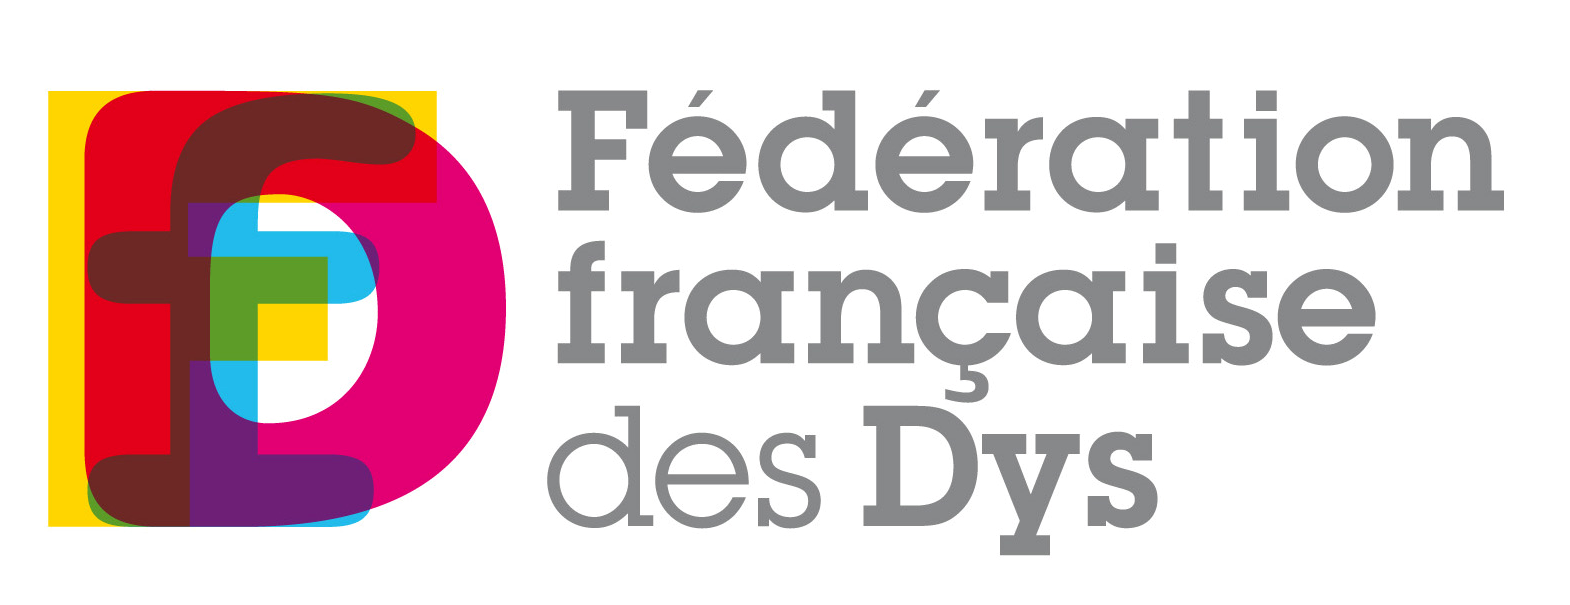 Logo DYS